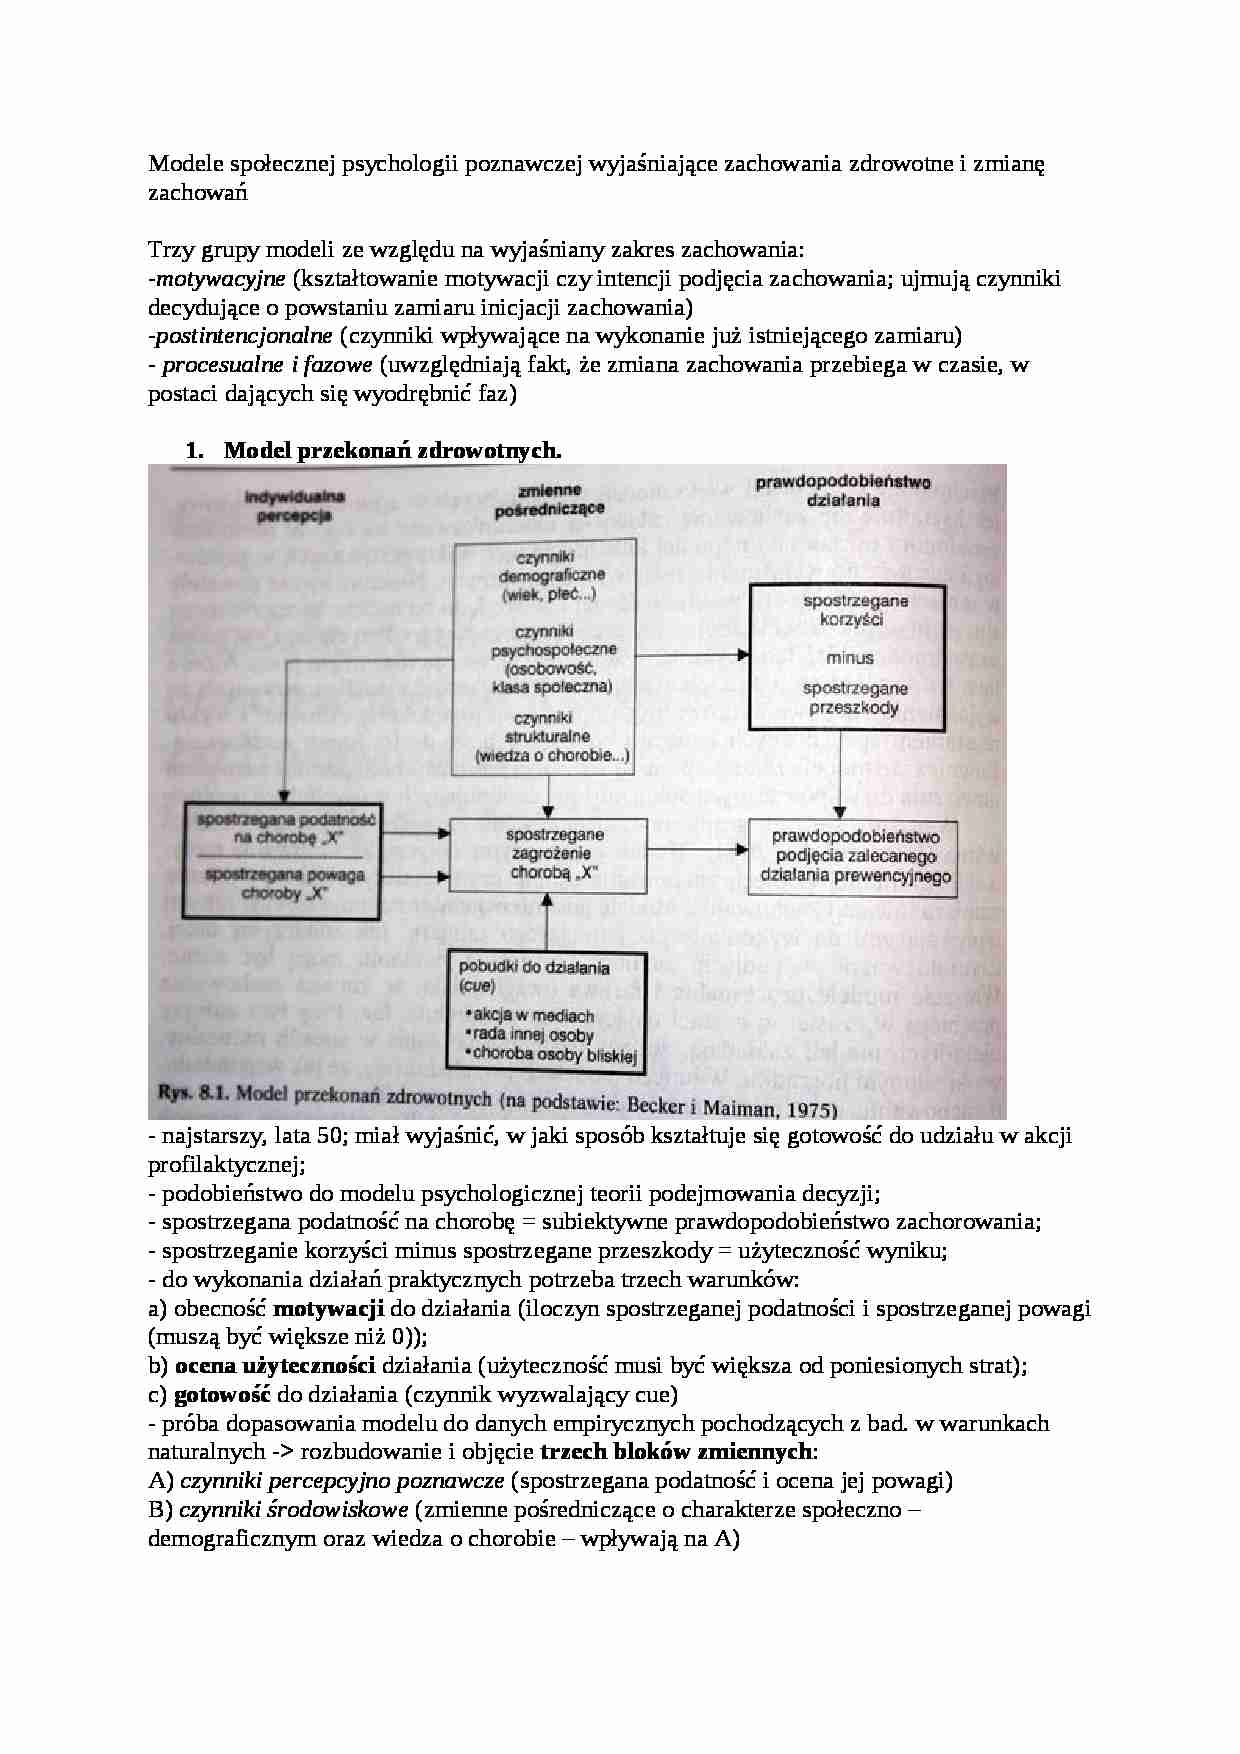 Modele społecznej psychologii poznawczej wyjaśniające zachowania zdrowotne i zmianę zachowań-opracowanie - strona 1